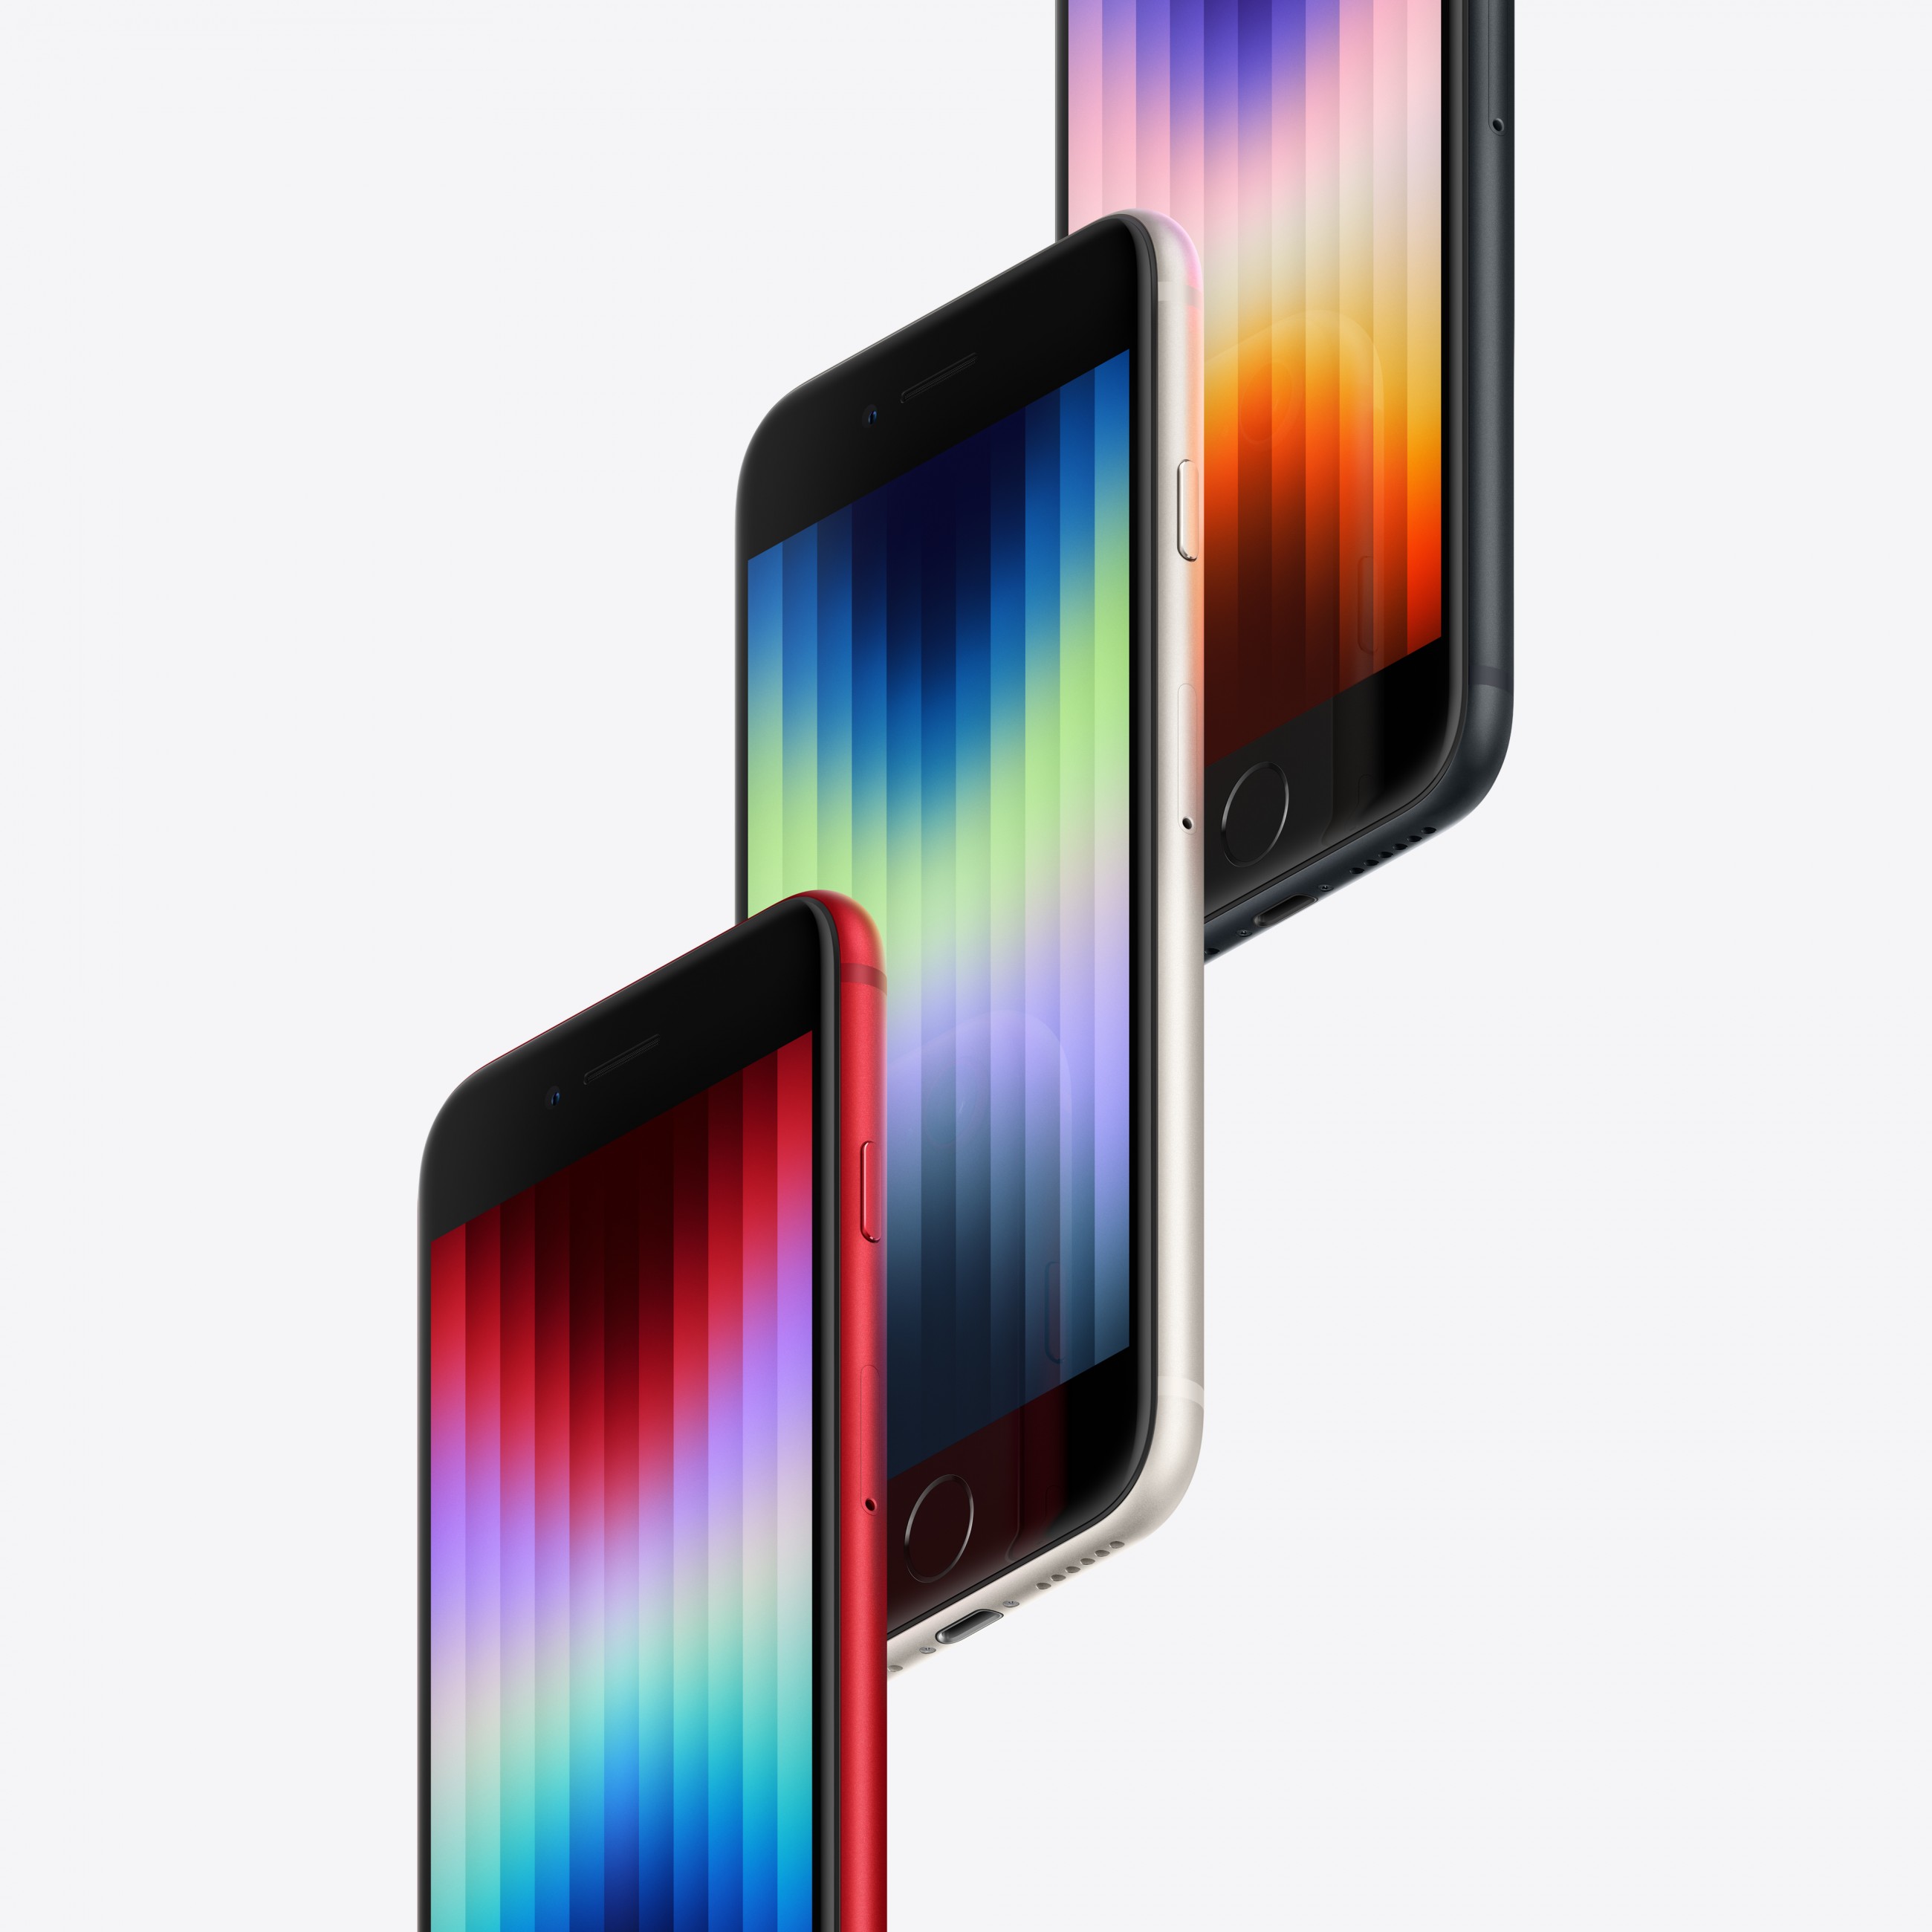 Apple iPhone SE 11,9 cm (4.7 Zoll) Dual-SIM iOS 15 5G 256 GB Weiß